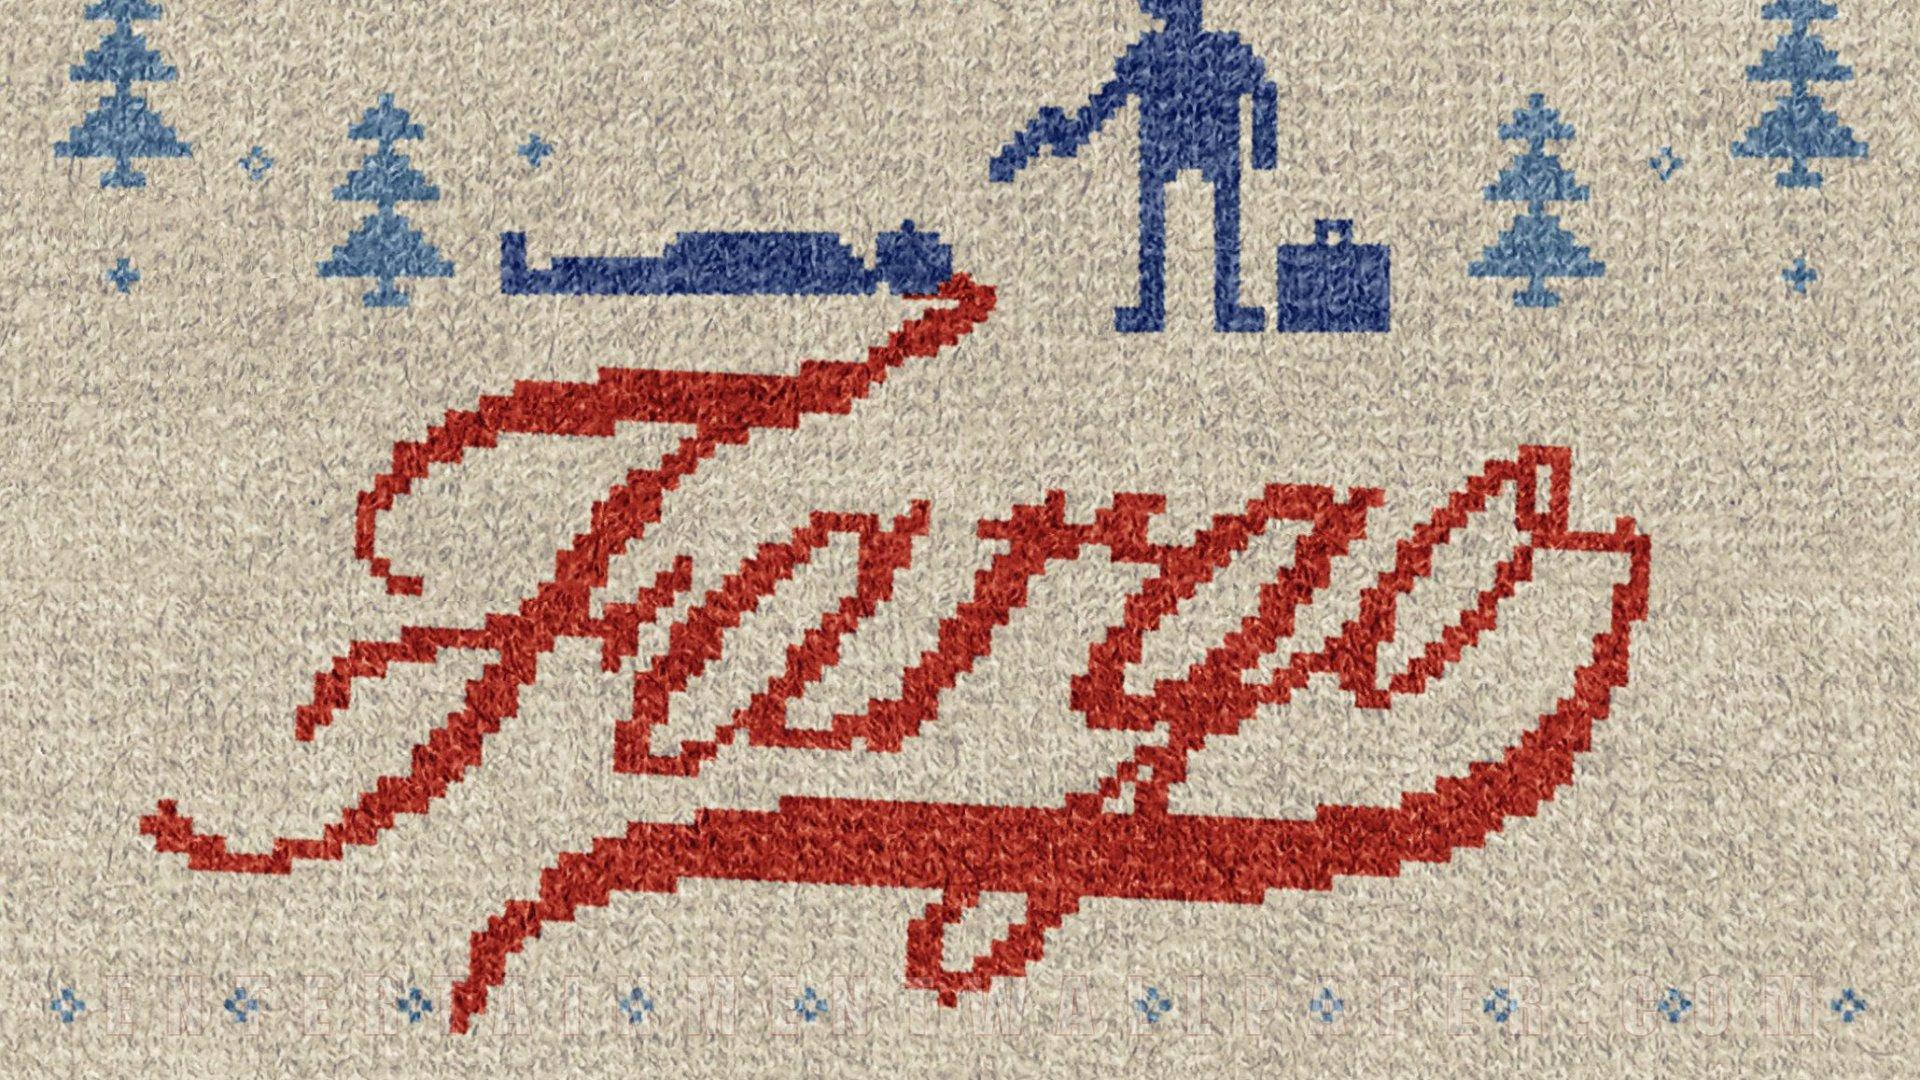 Fargo Cursive Font Wallpaper